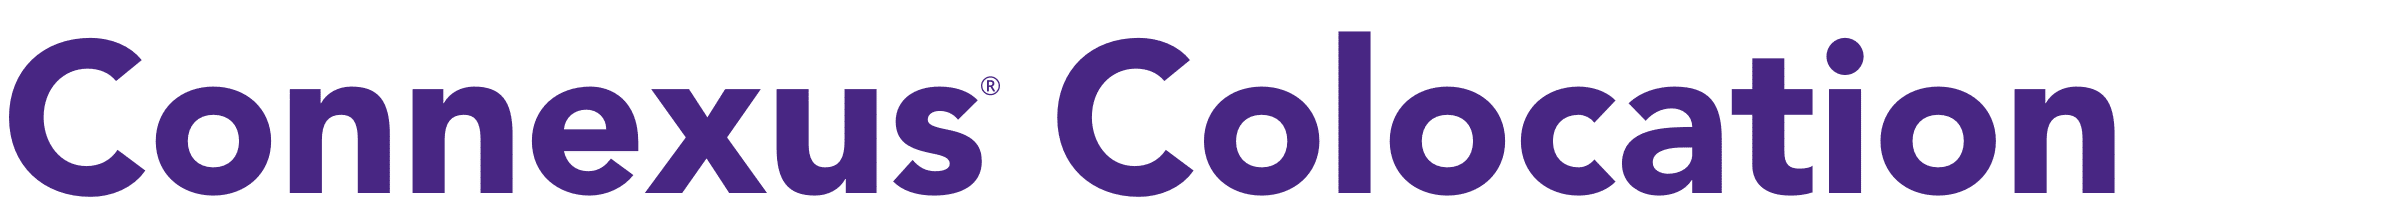 connexus colocation